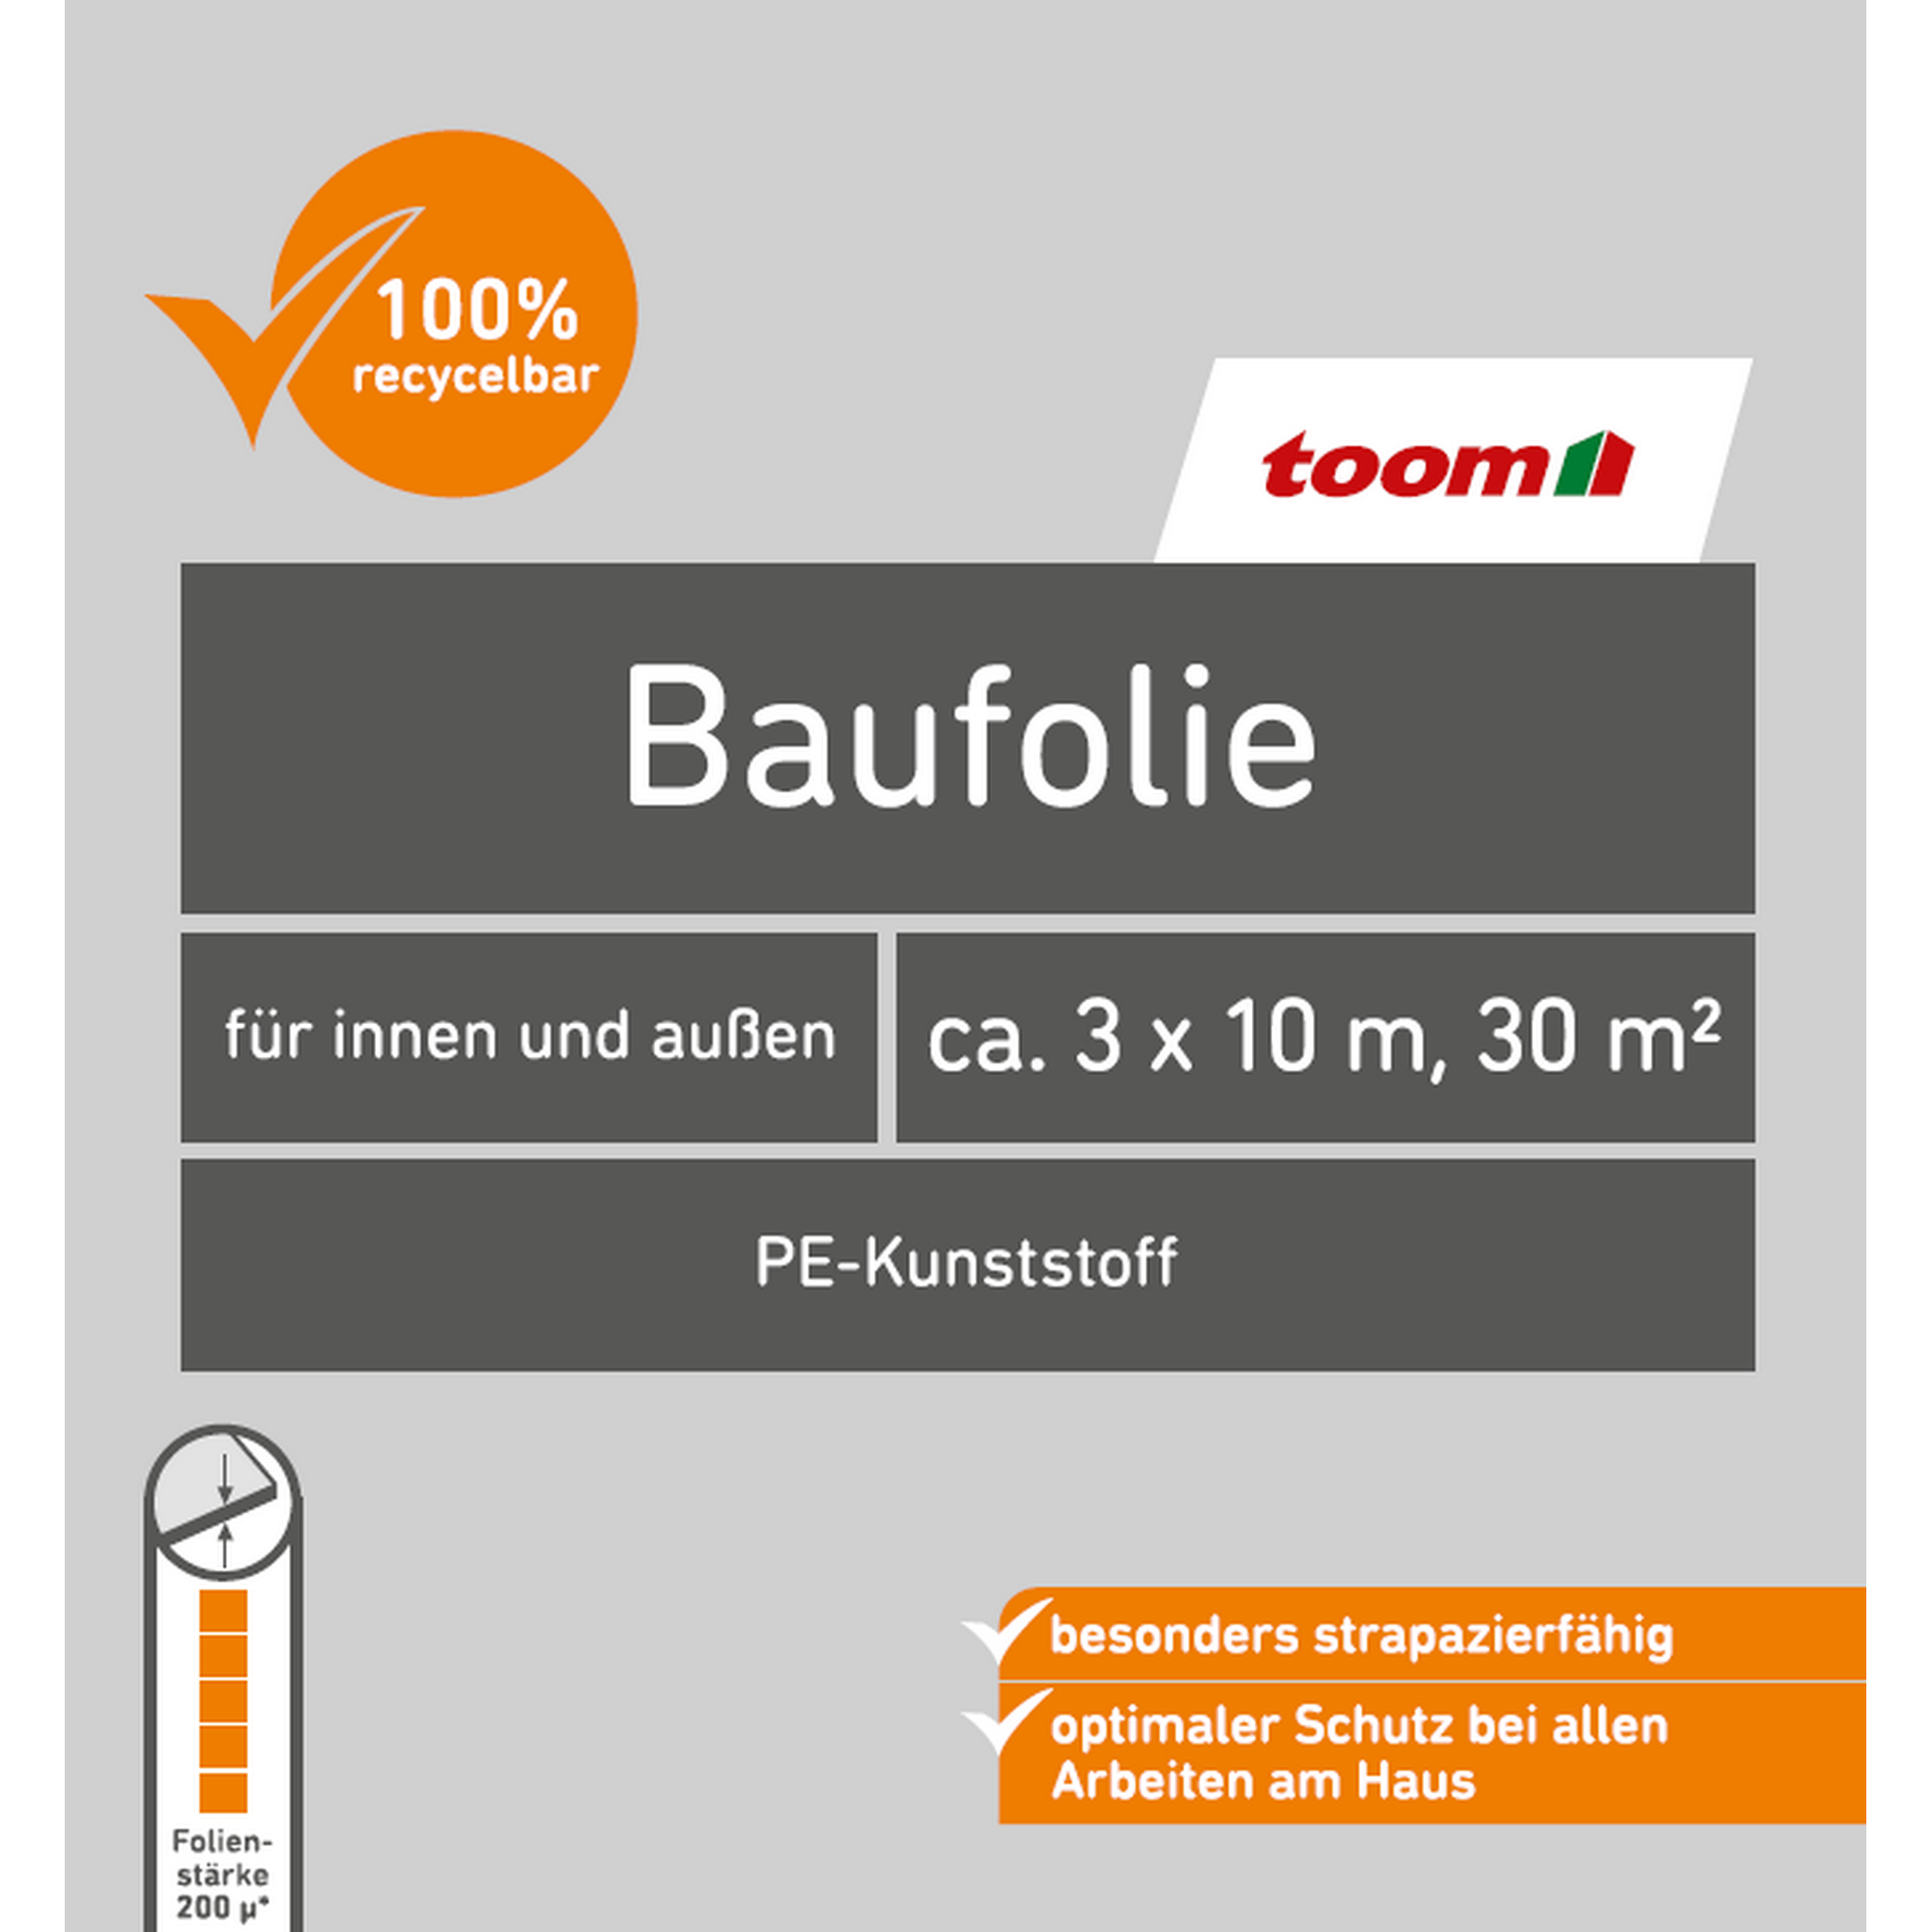 Baufolie 'Profi' Polyethylen 3 x 10 m + product picture